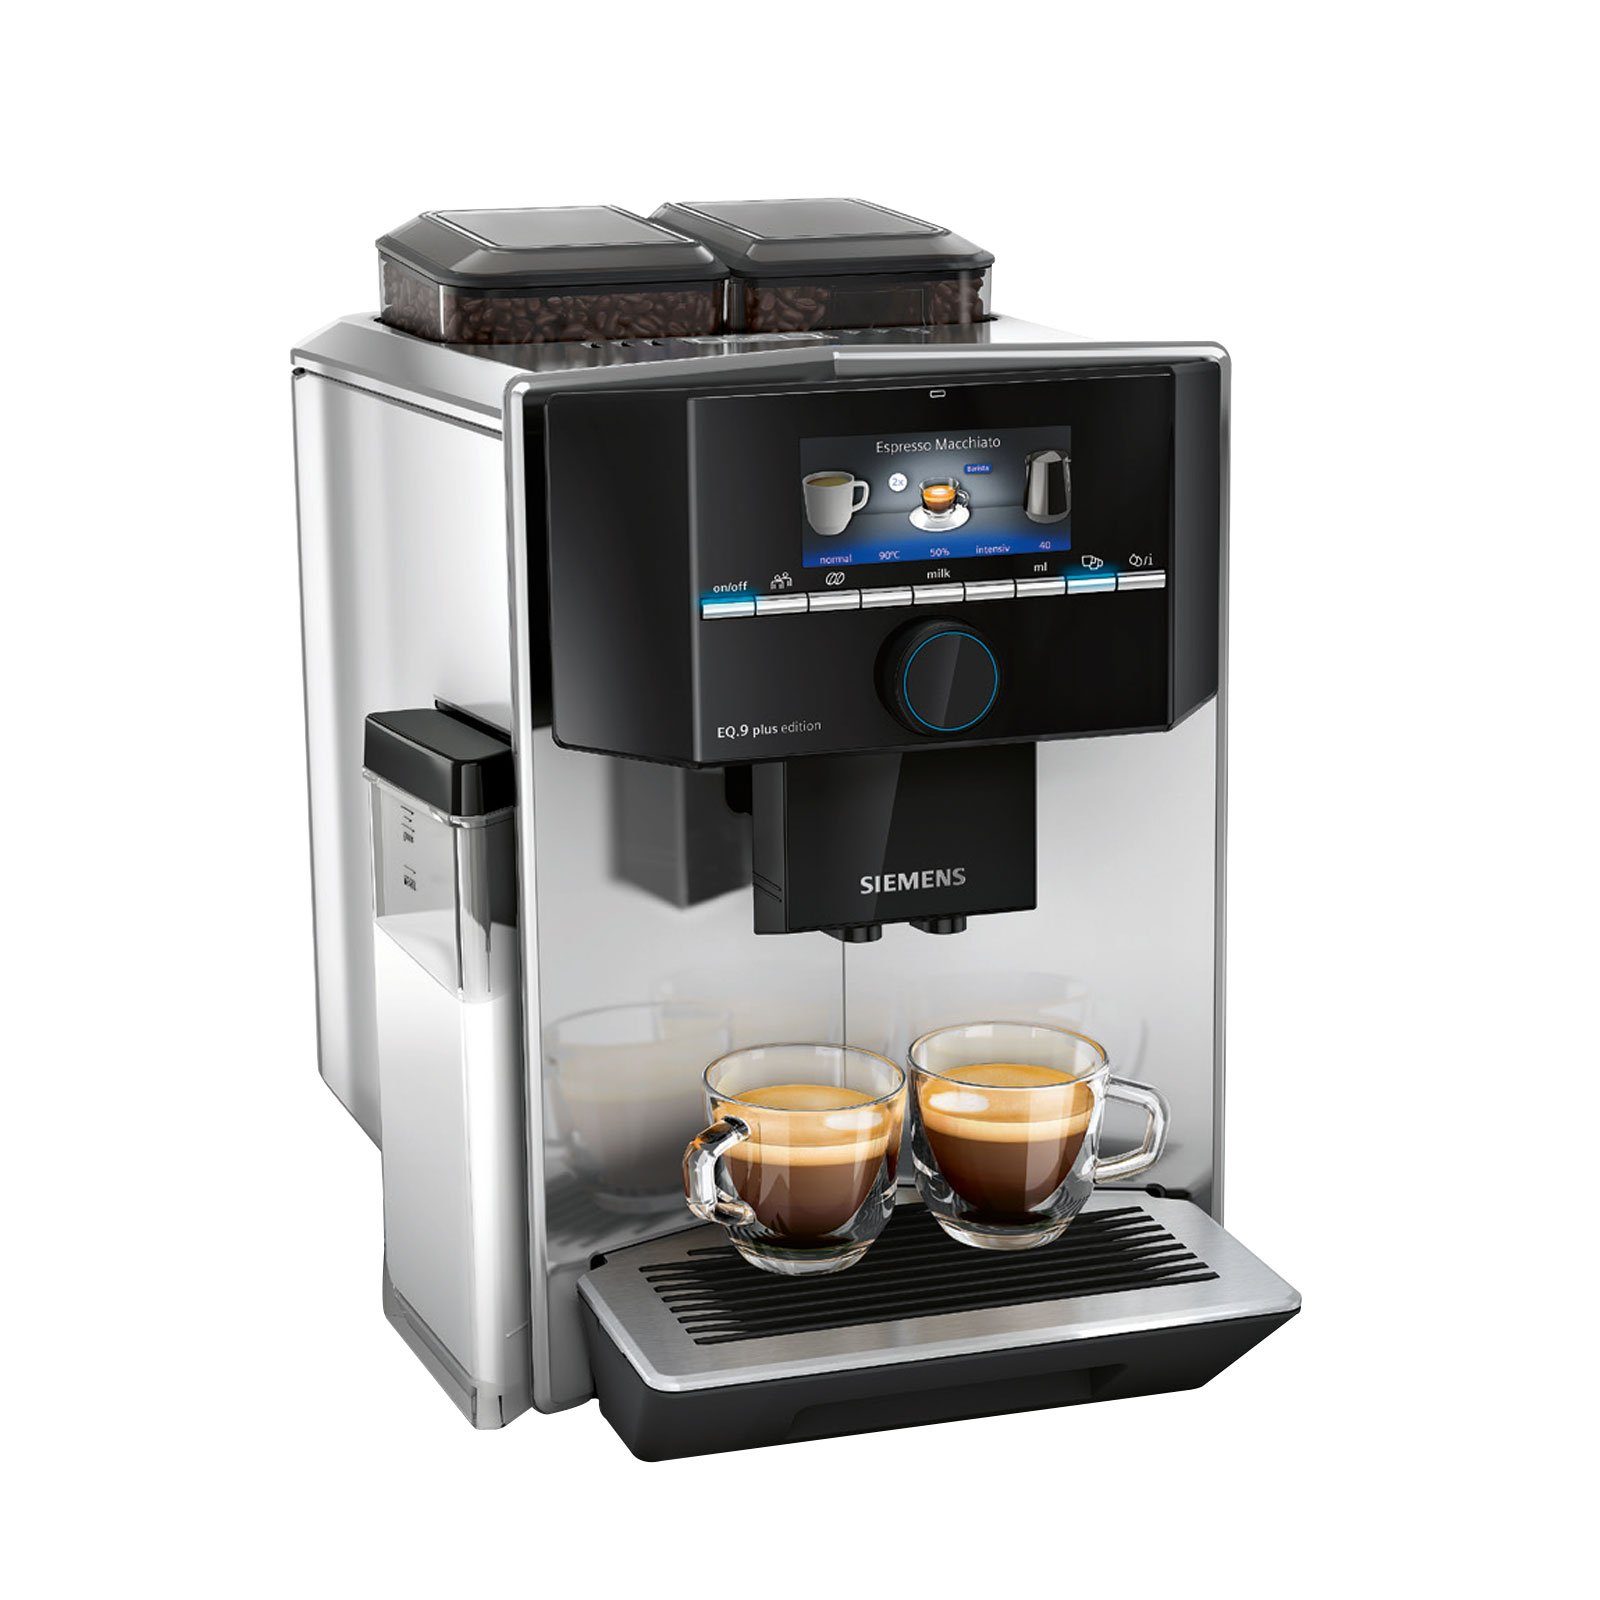 noch connect einstellbare plus Aromaextraktion SIEMENS Siemens EQ.9 TI9575X7DE durch Brühgeschwindigkeit Kaffeevollautomat, s700 aromaIntense: höhere Kaffeevollautomat